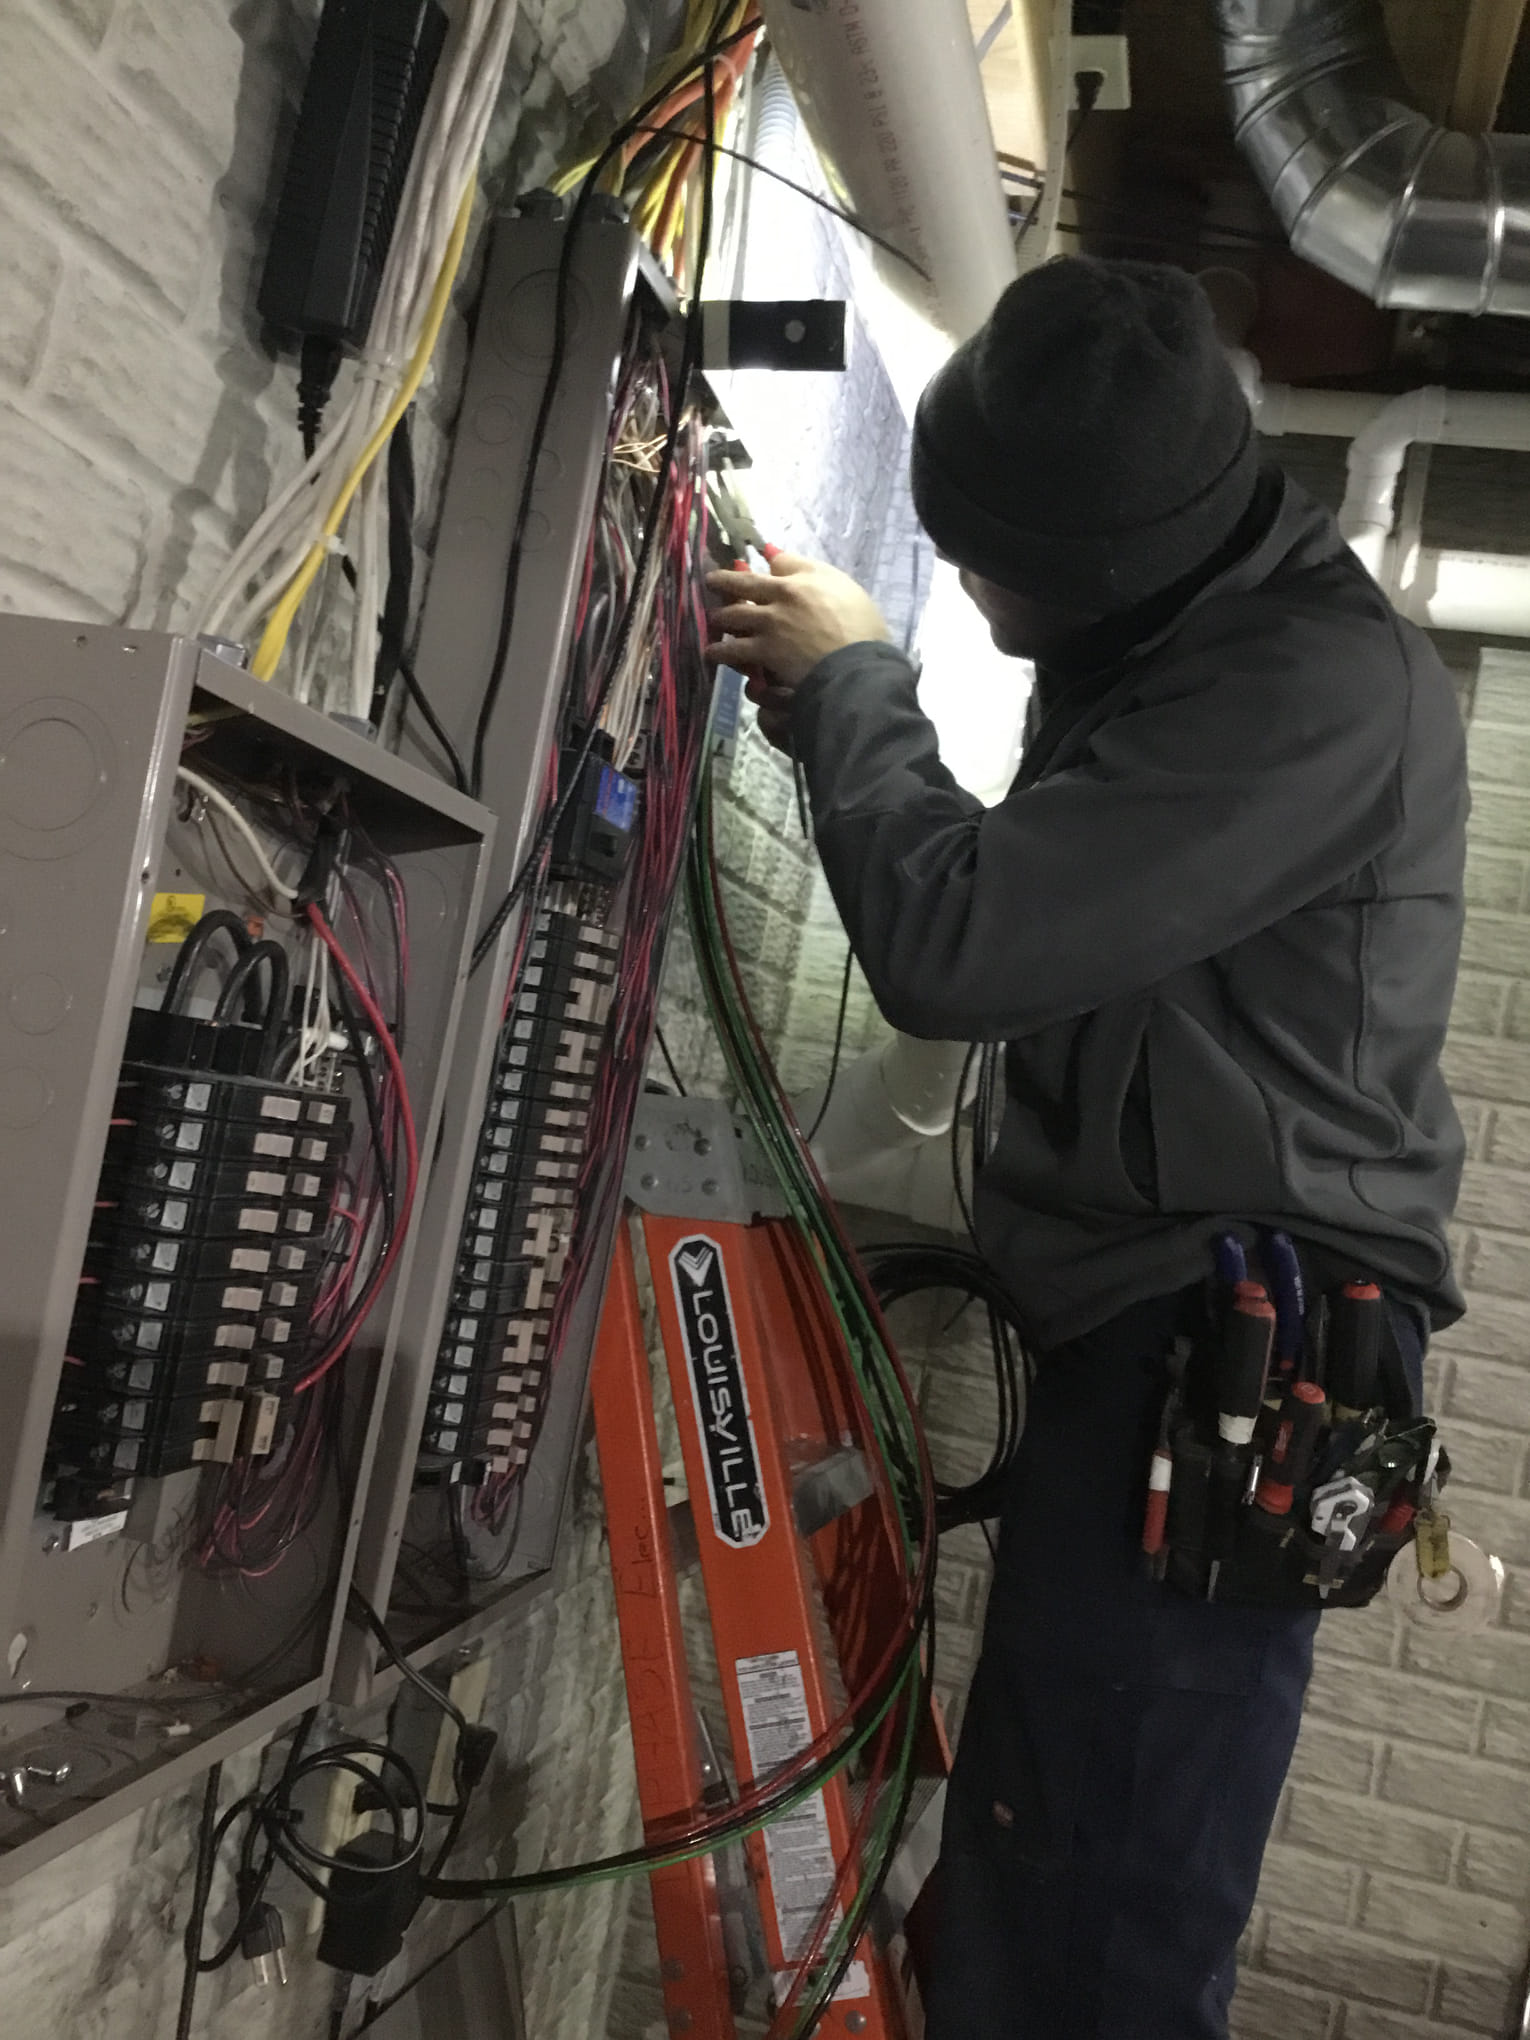 Electrical Panel Repair